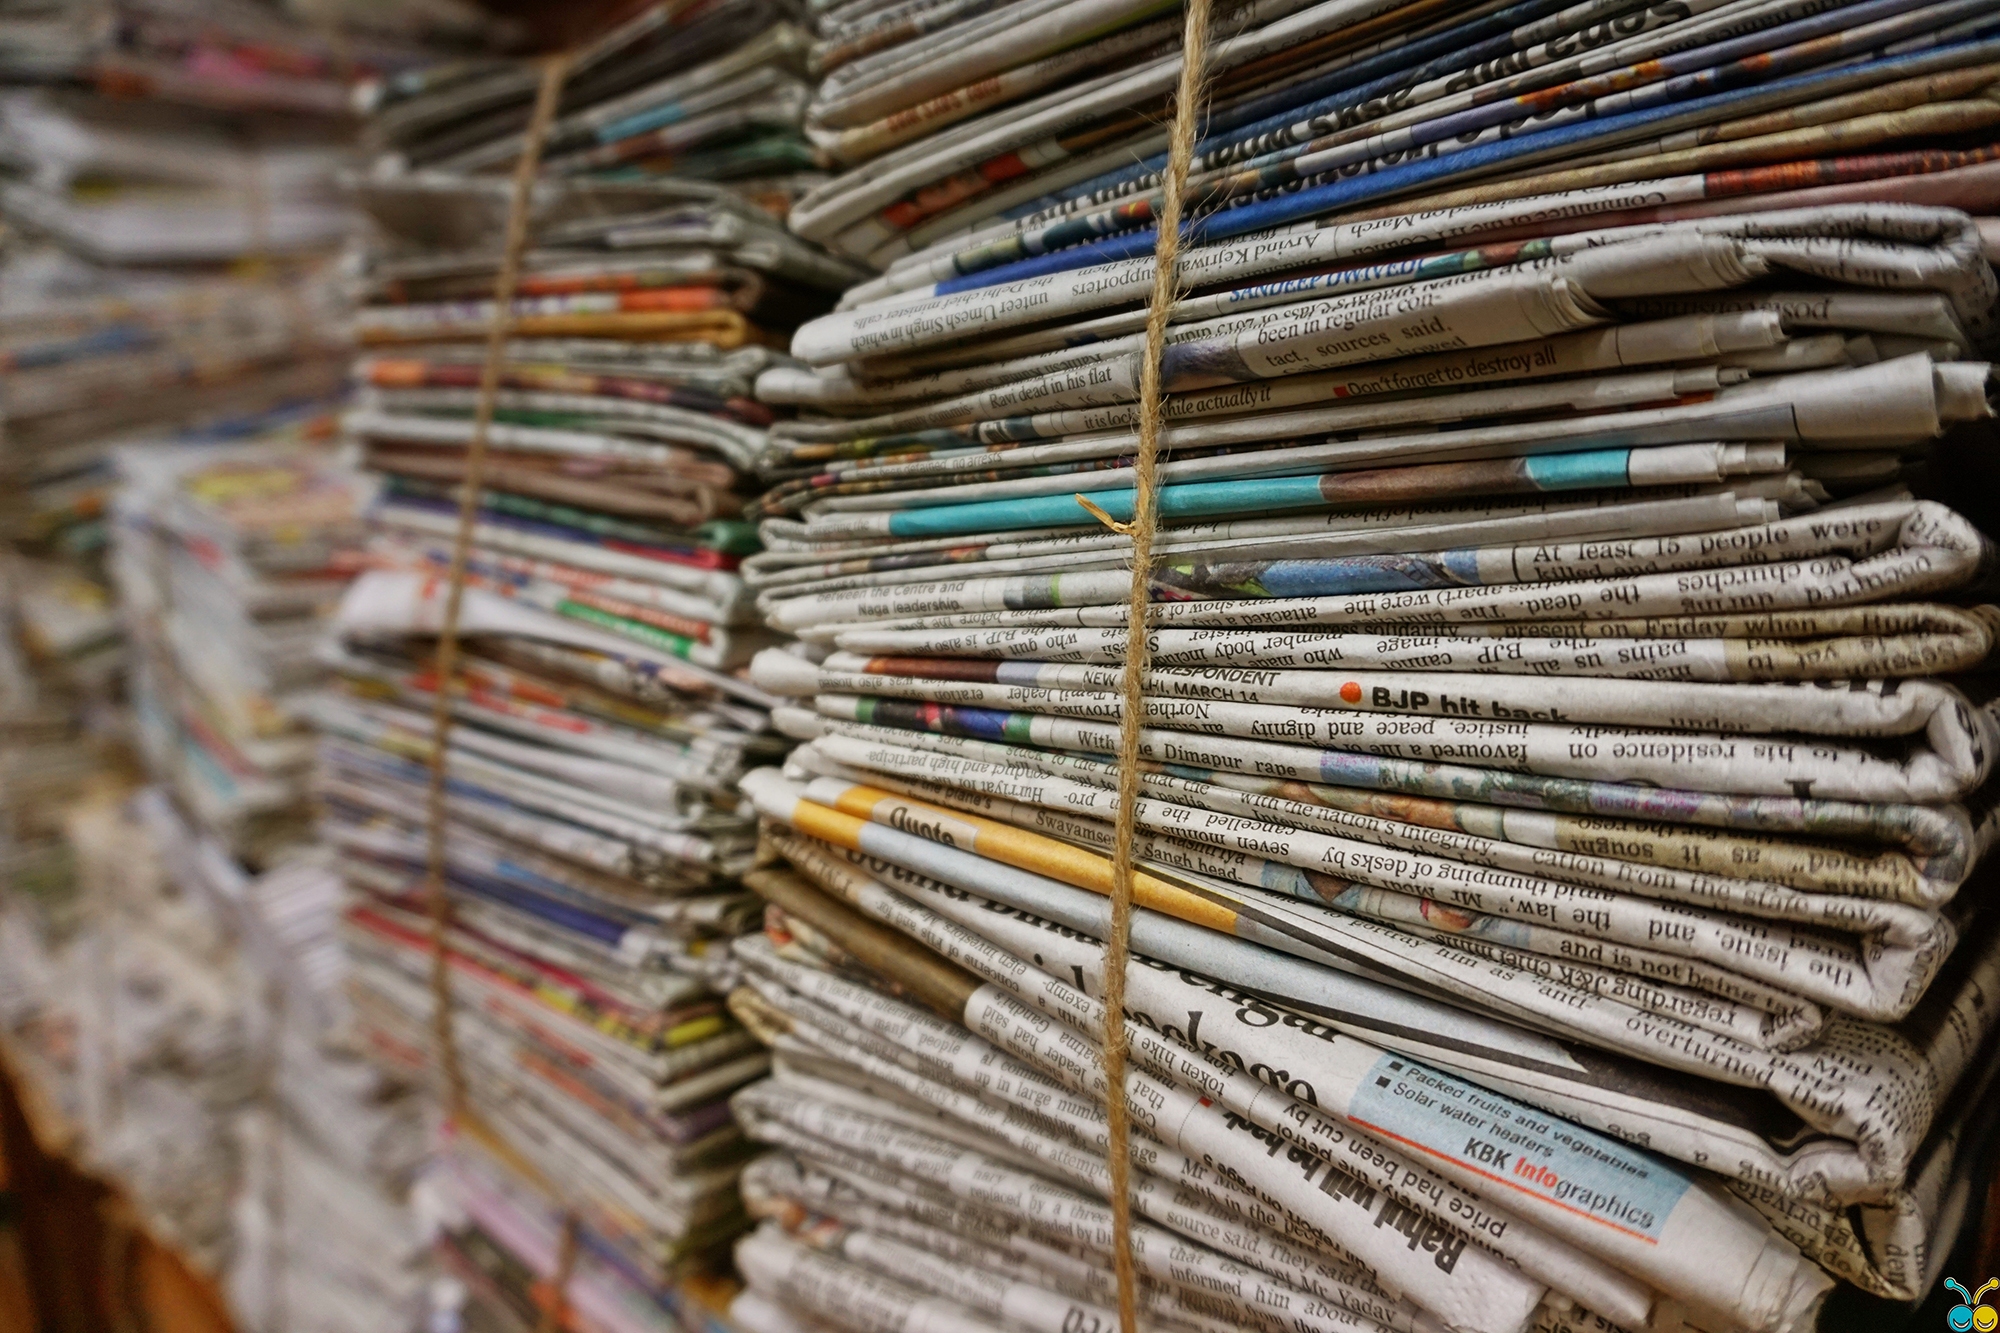 Stacks of newspapers bundled together